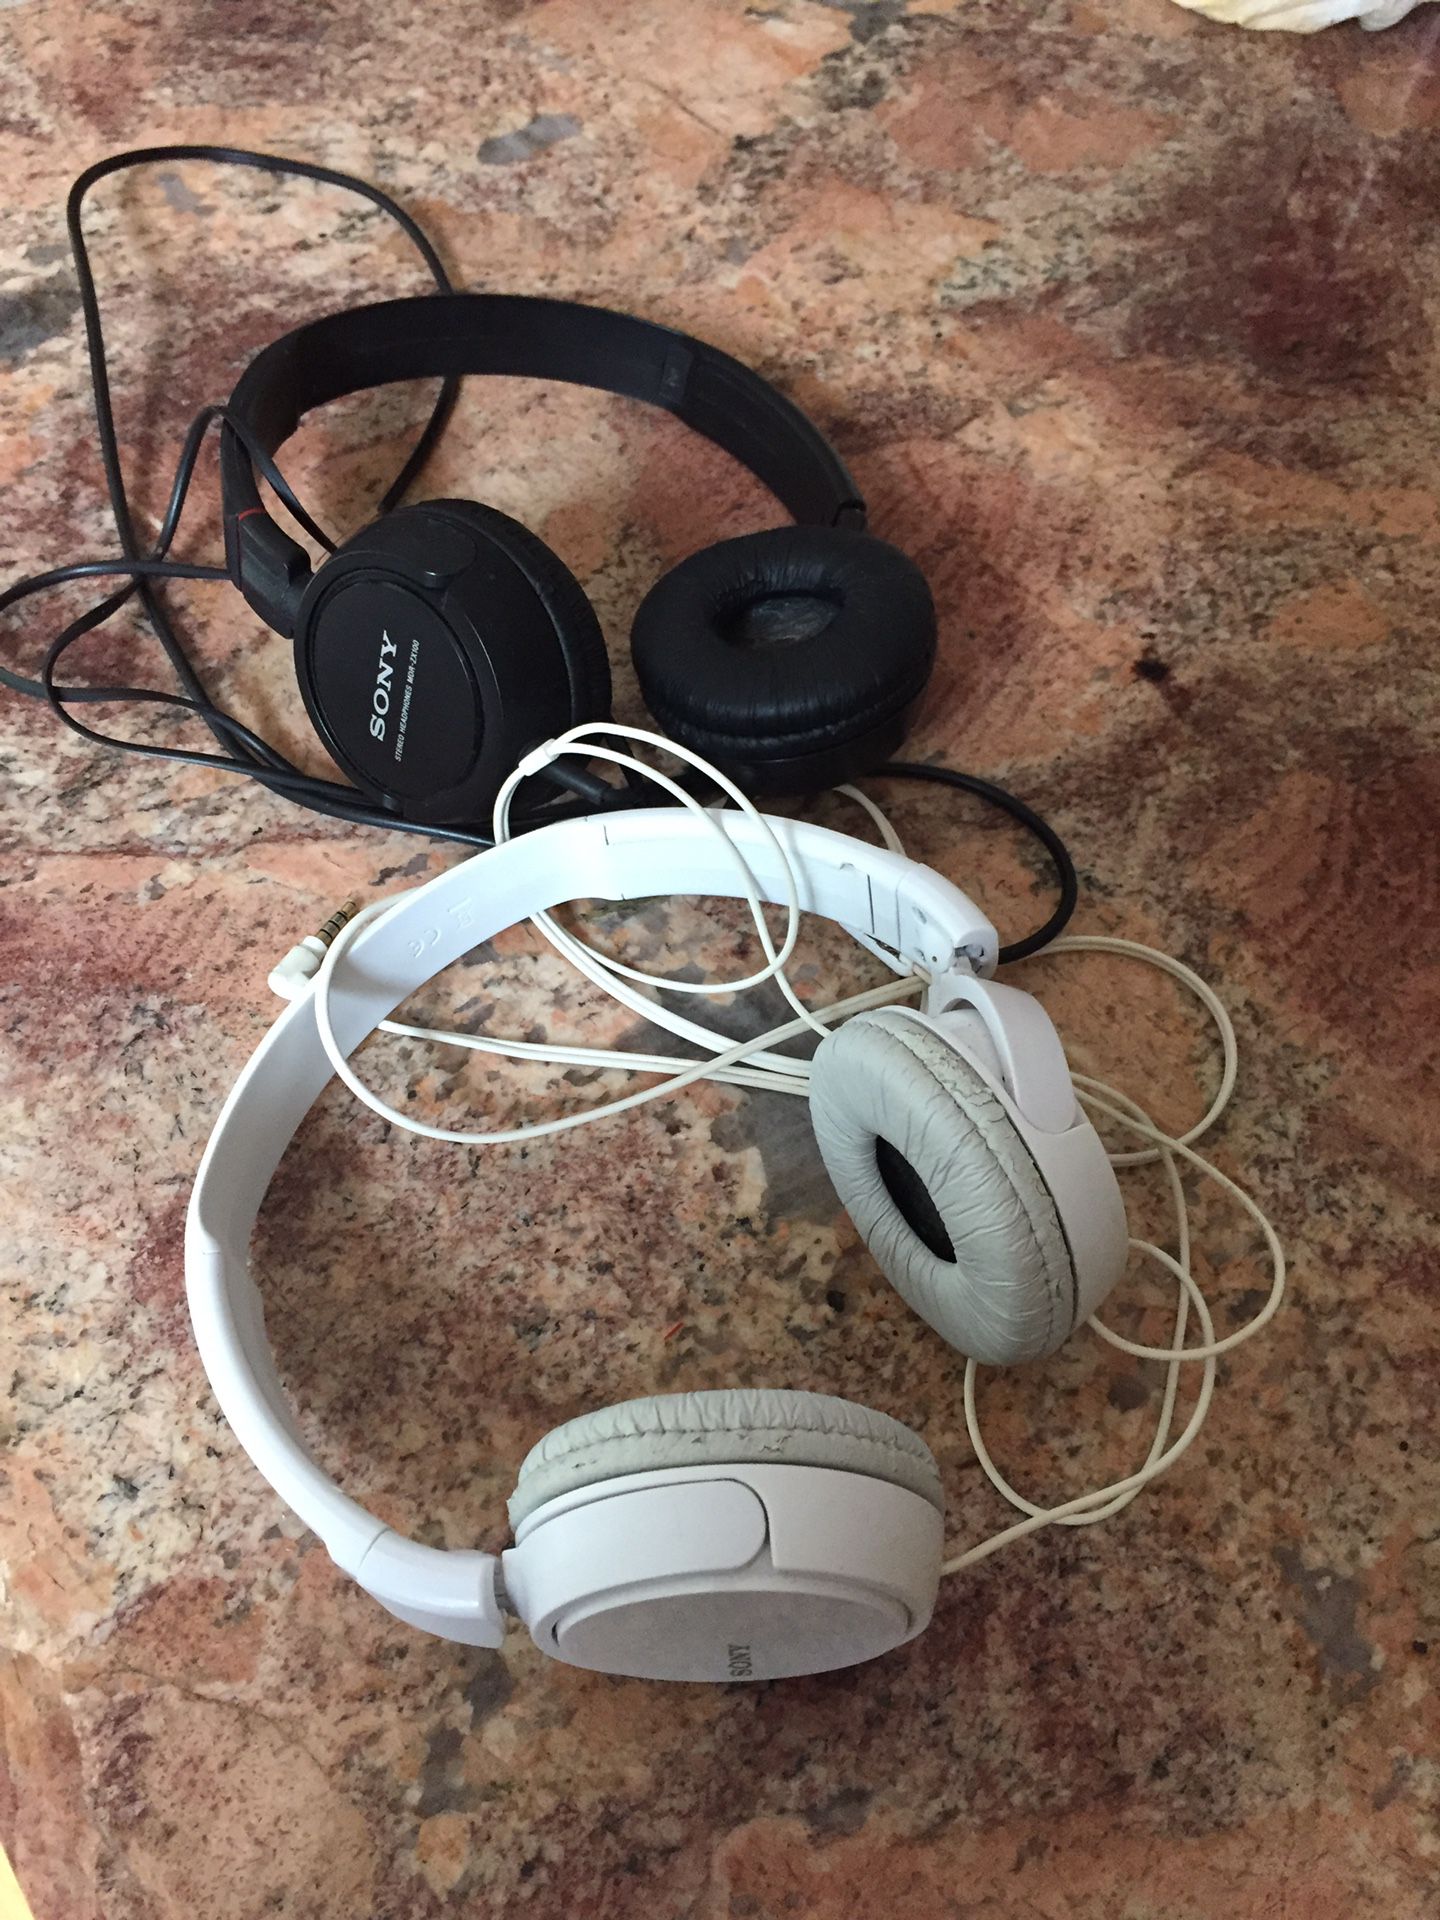 Two Sony headphones